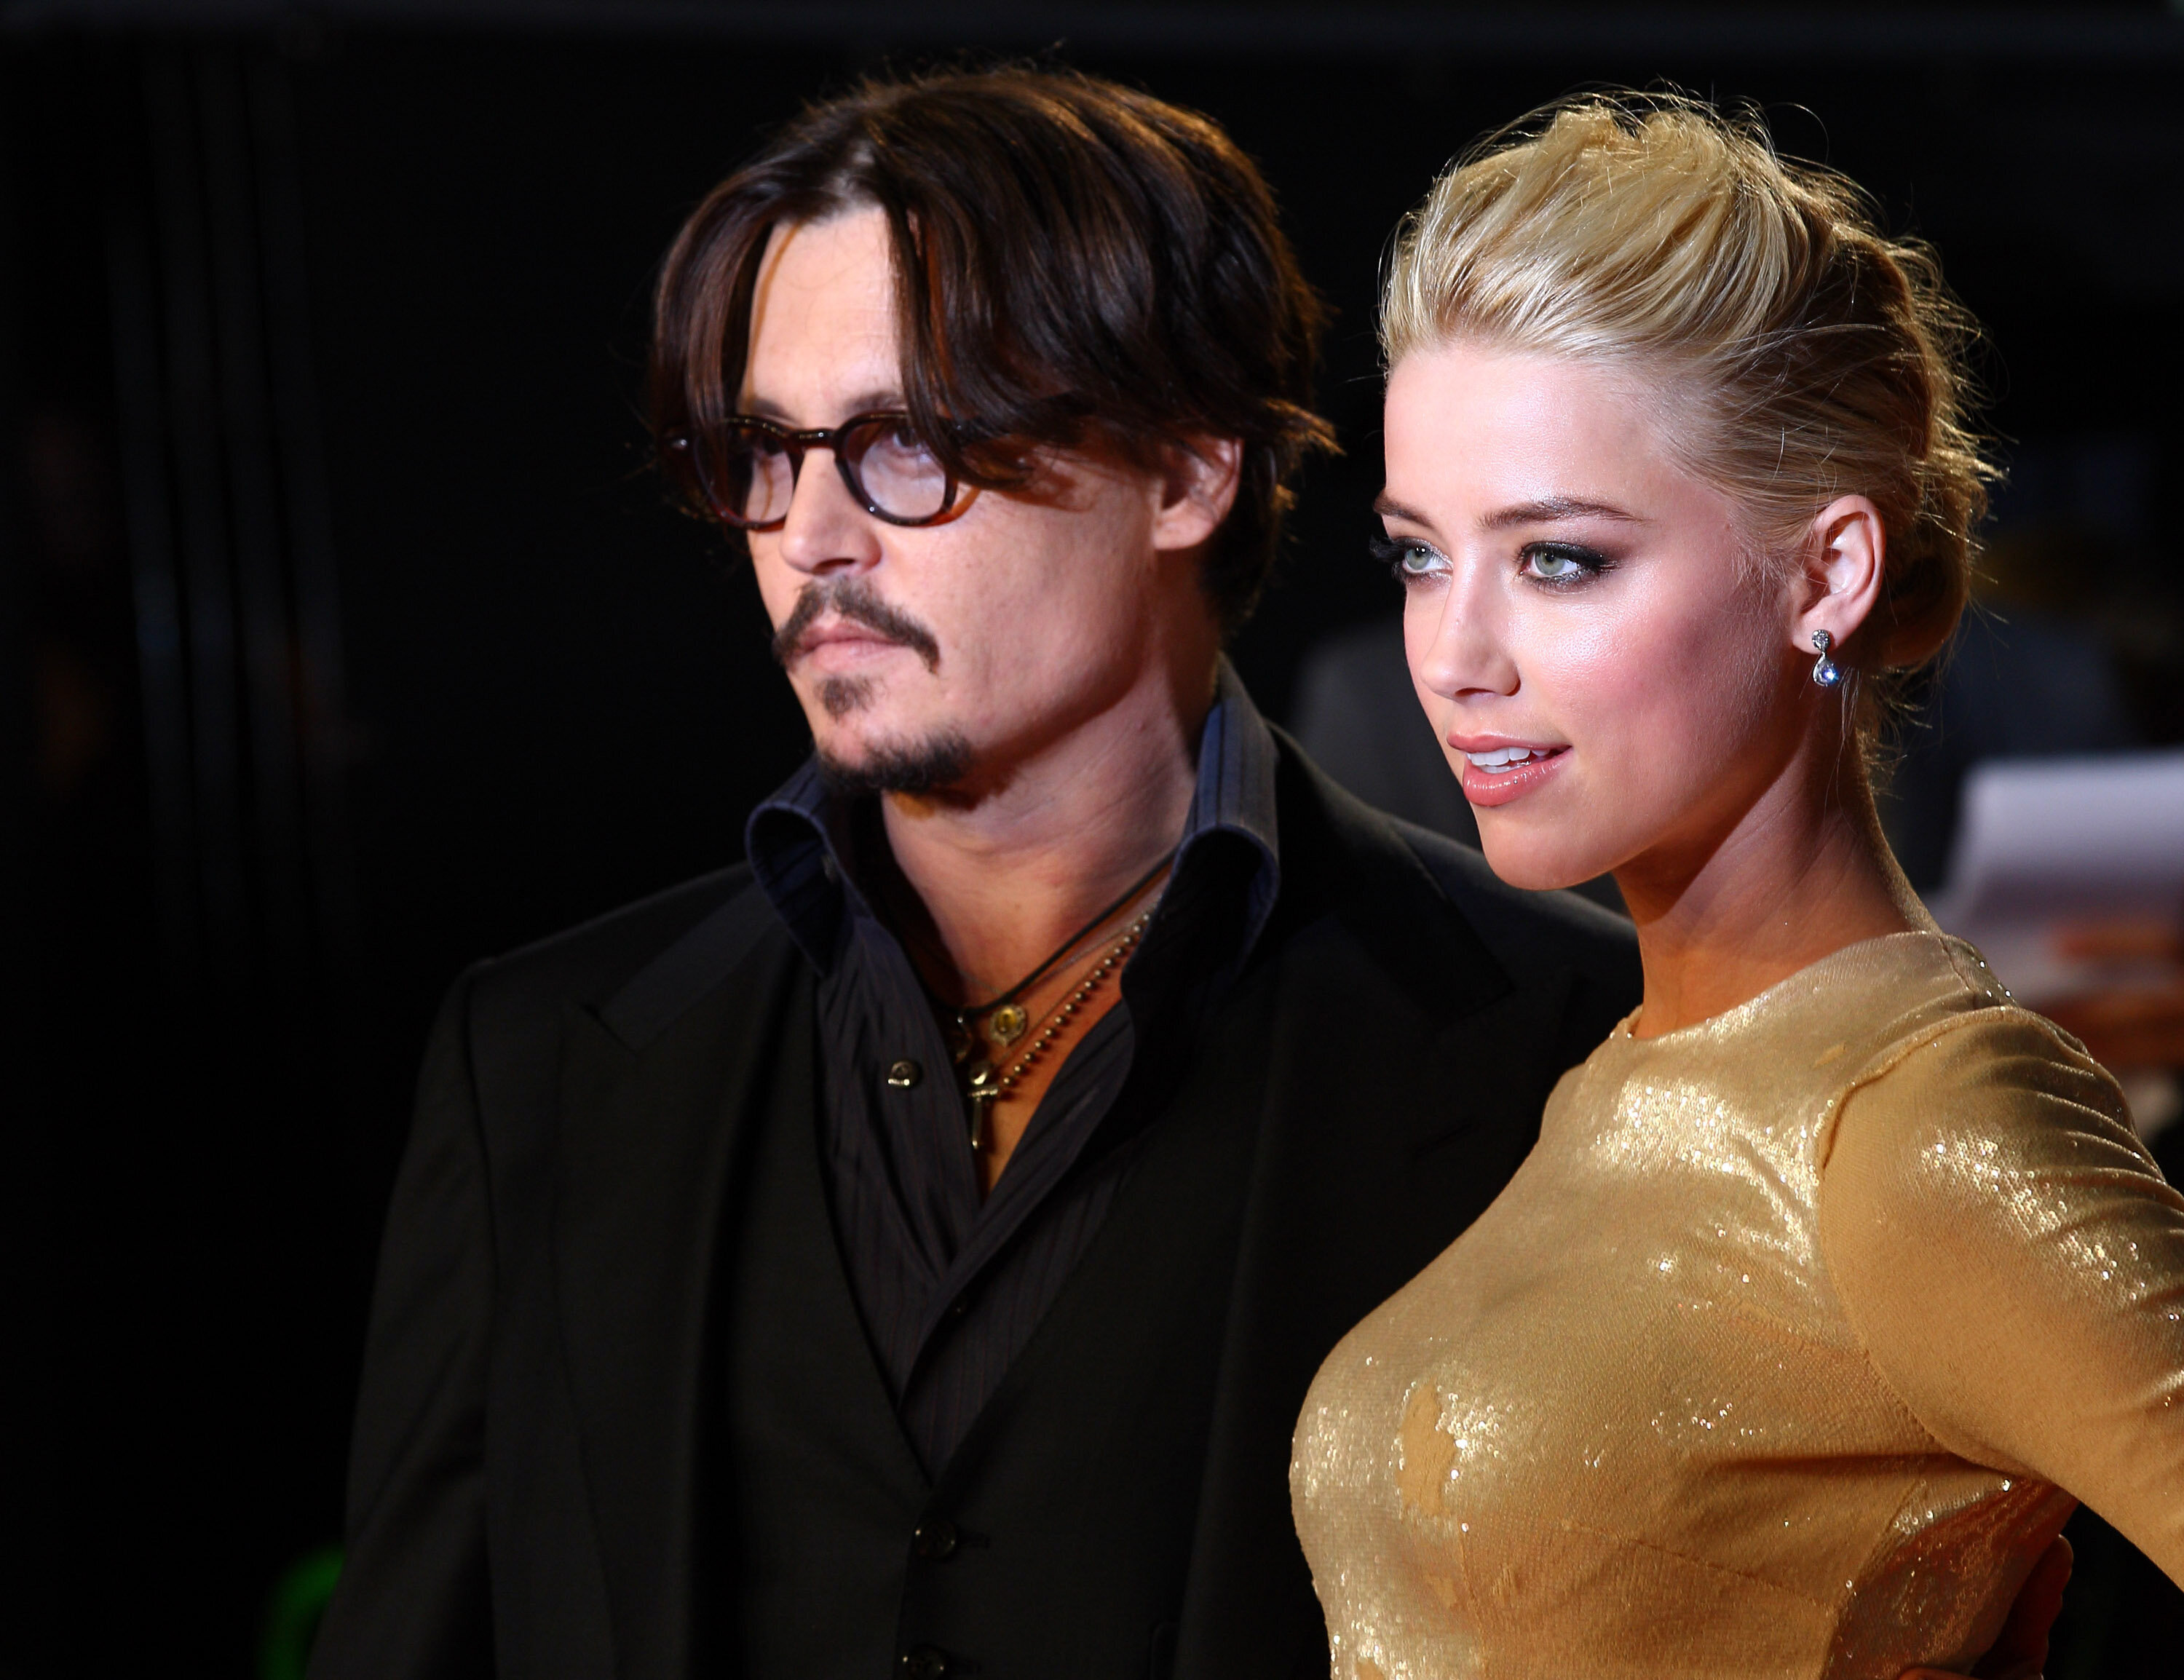 Johnny Depp et Amber Heard ce quil faut savoir de laffaire image